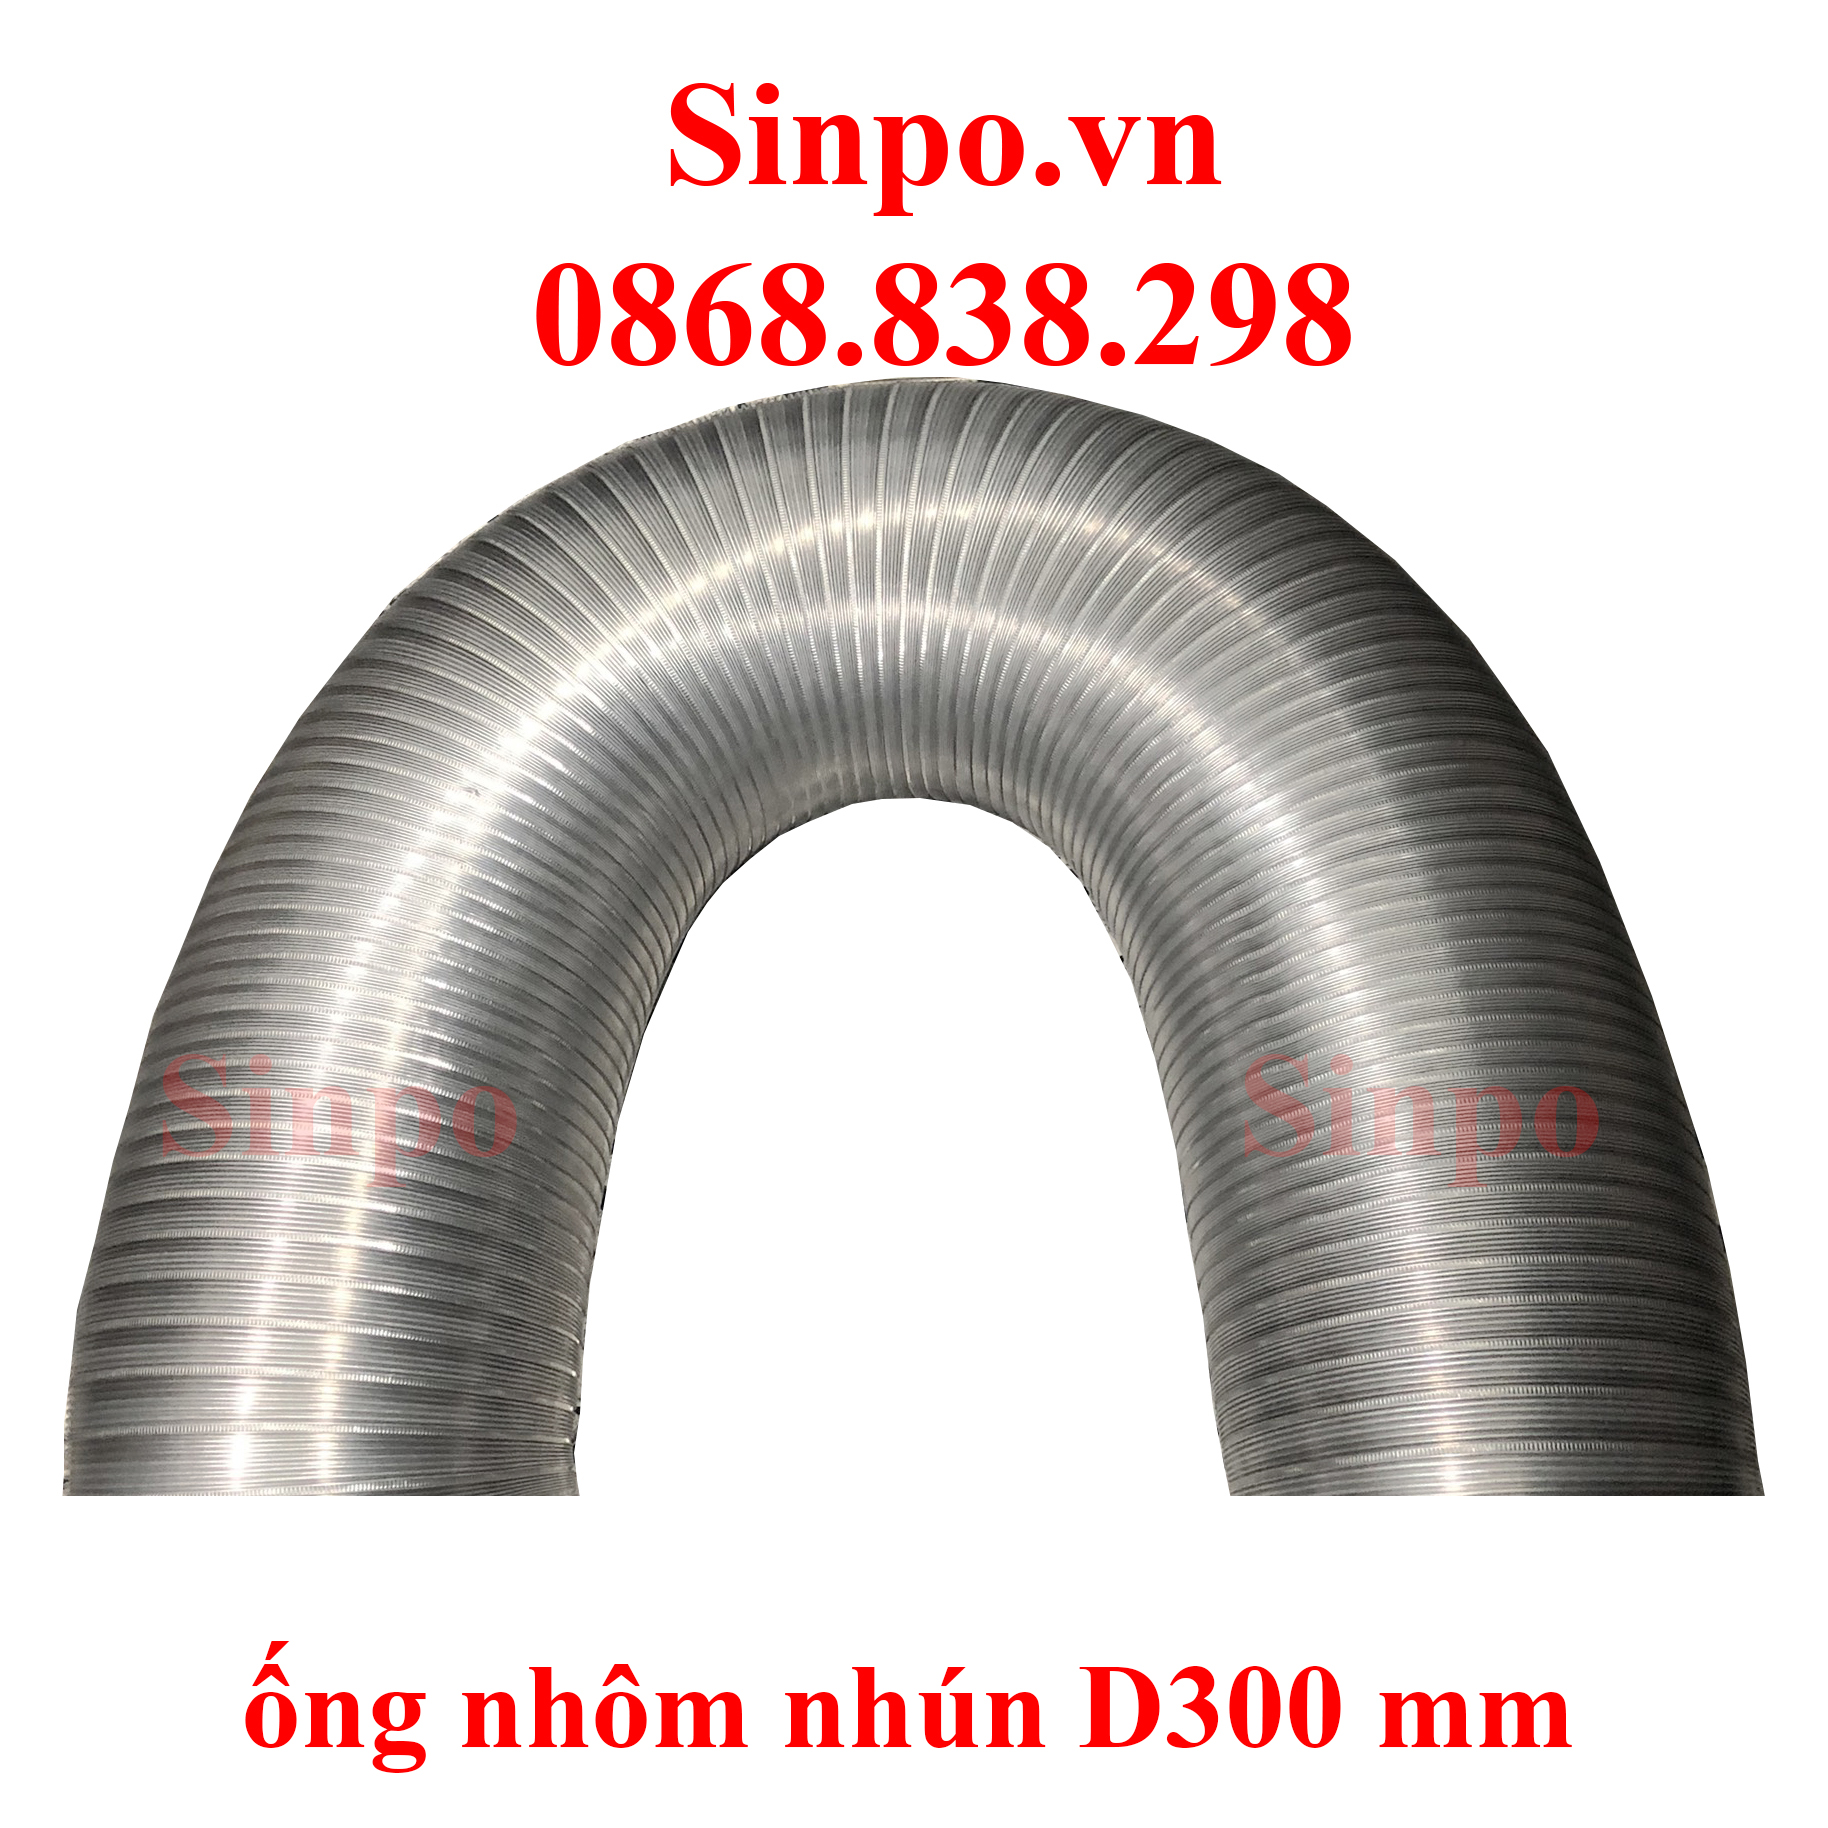 Giá bán ống nhôm nhún D300 mm tại Hà Nội